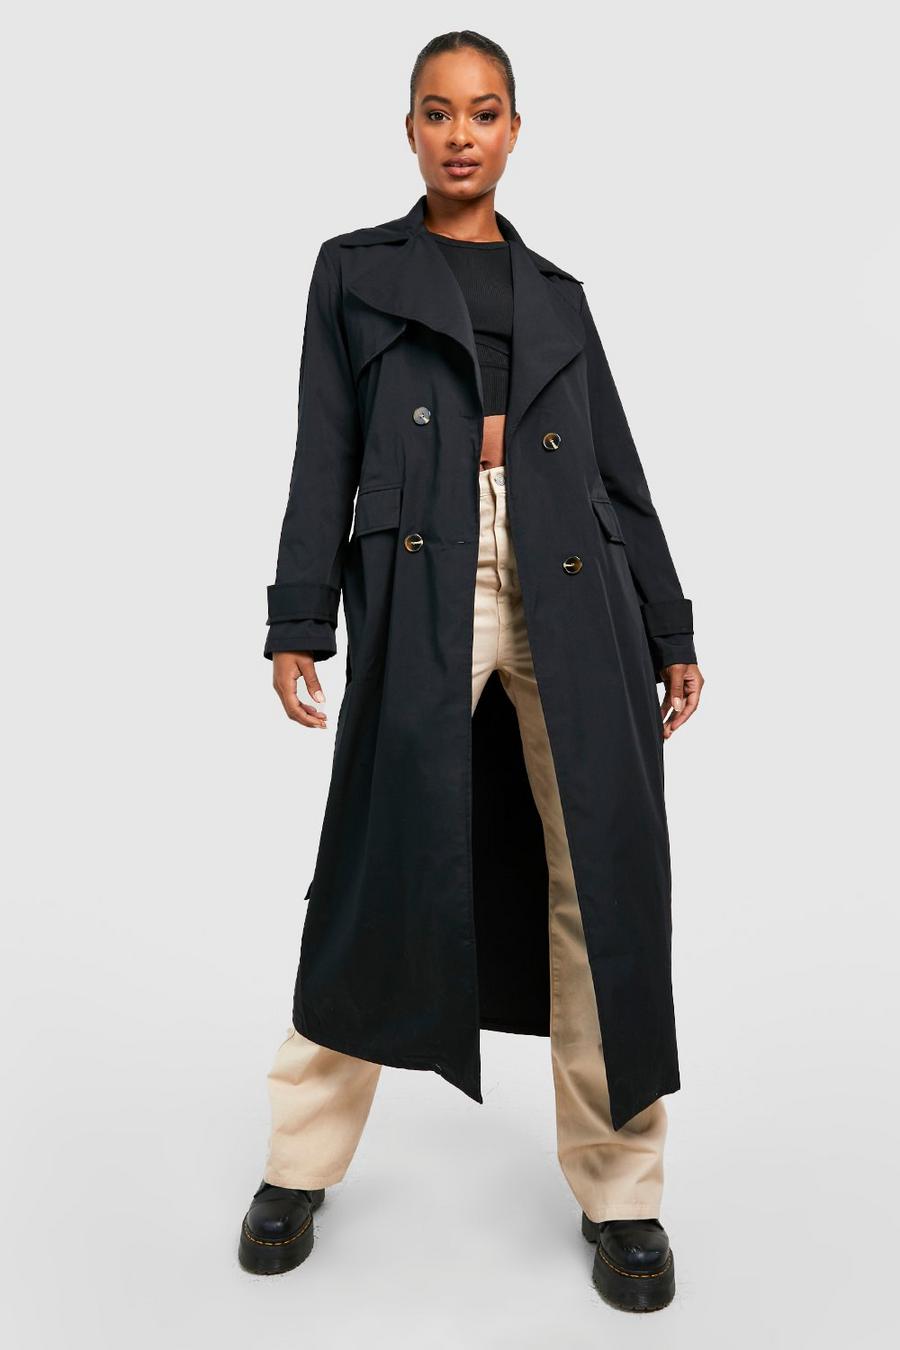 שחור מעיל טרנץ' אוברסייז עם חגורה, לנשים גבוהות